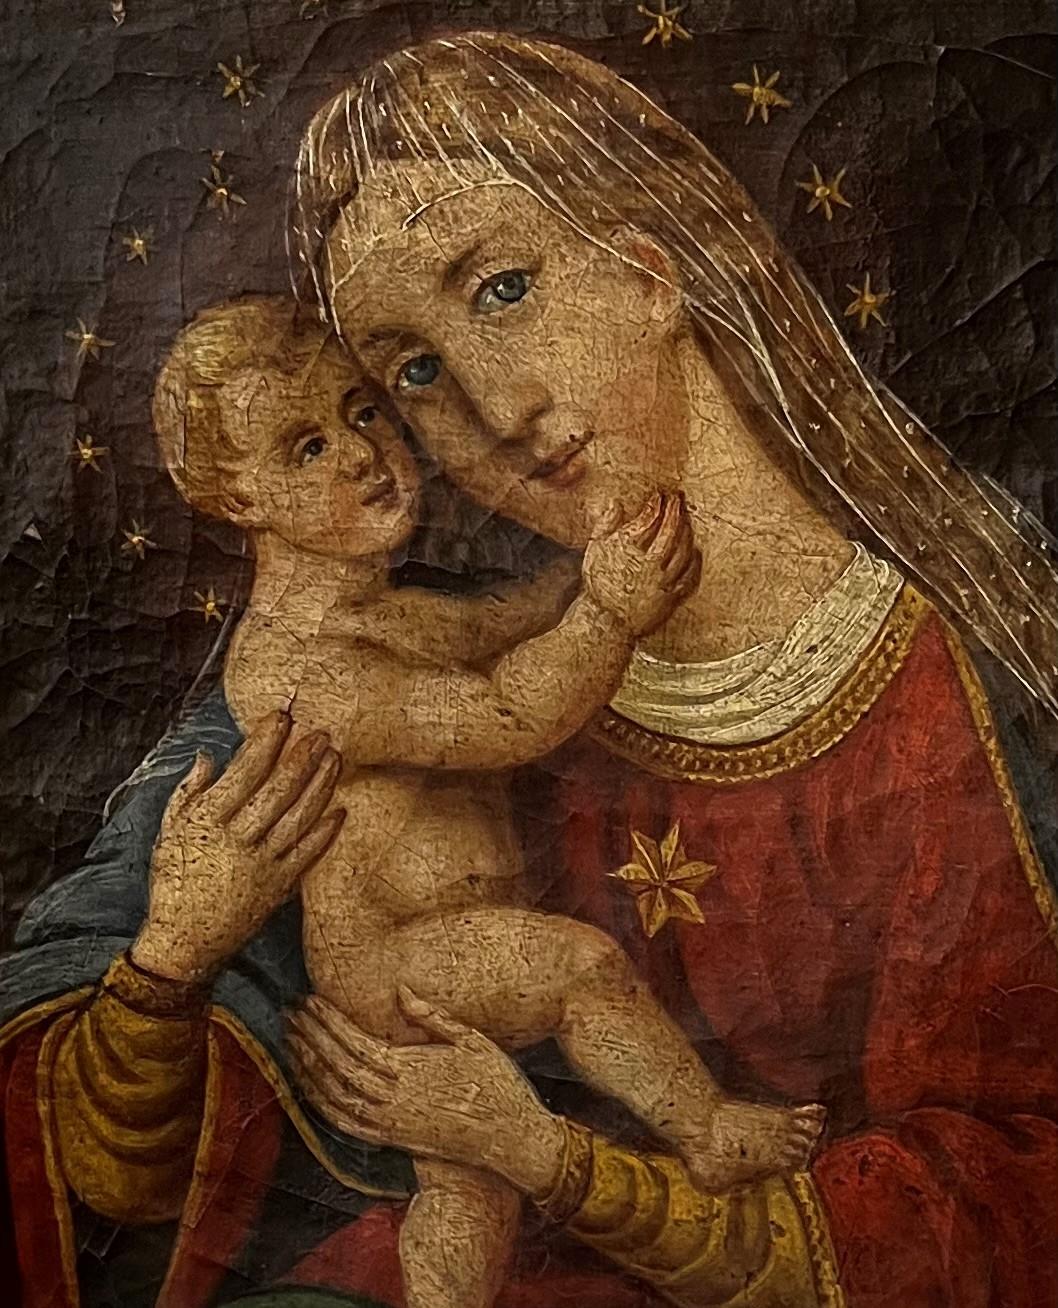 Au fil des siècles, à l'époque de la Renaissance, plusieurs peintres dans toute l'Europe ont été fascinés par le thème basé sur un sujet similaire avec la mère et l'enfant comme figures principales. 

Cette superbe huile sur toile représentant la